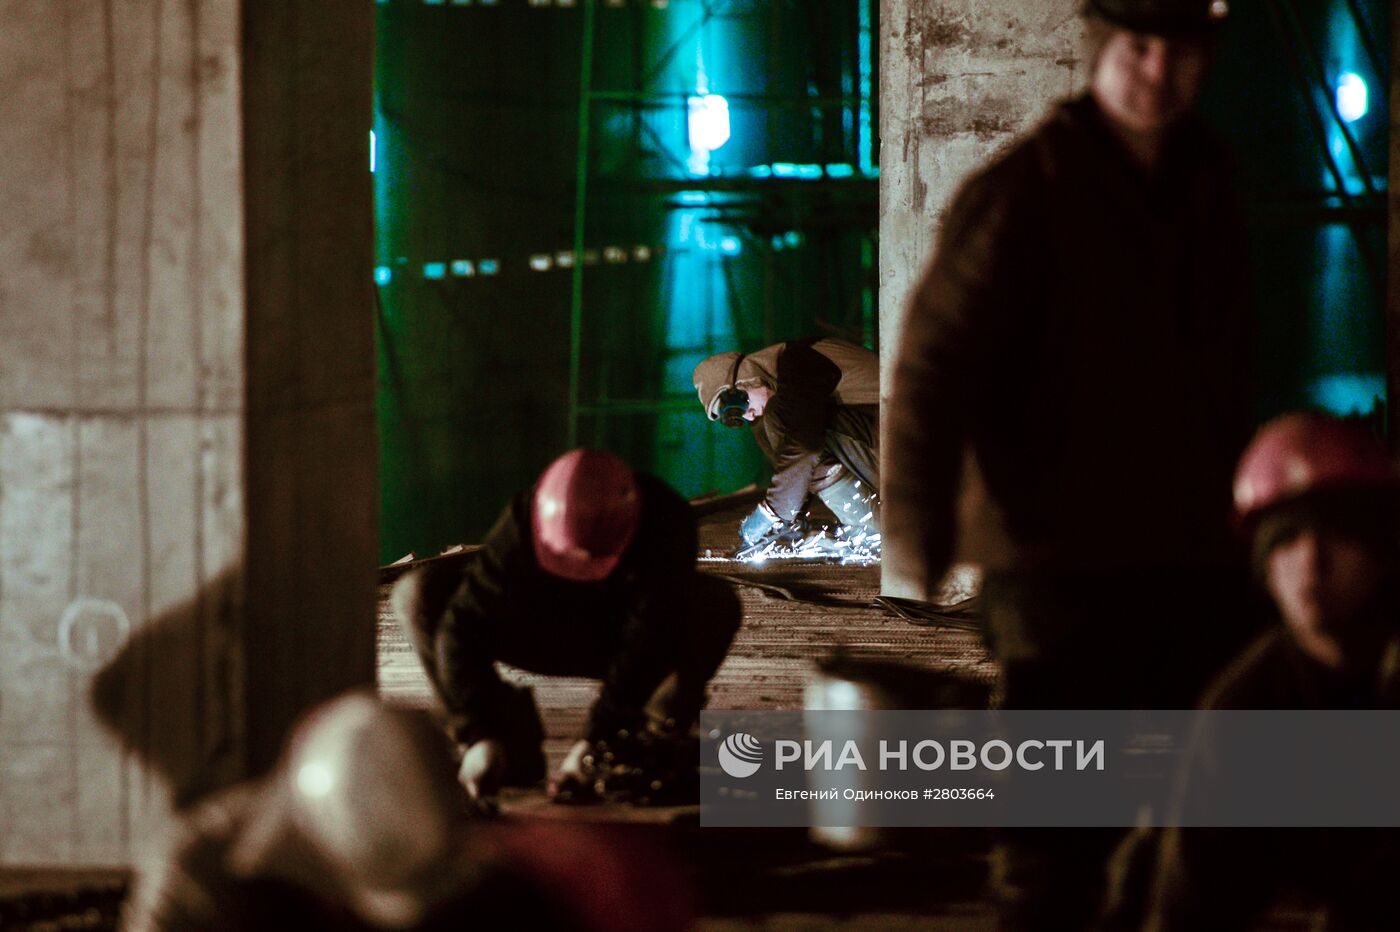 Строительство станции метро "Хорошевская" Третьего пересадочного контура